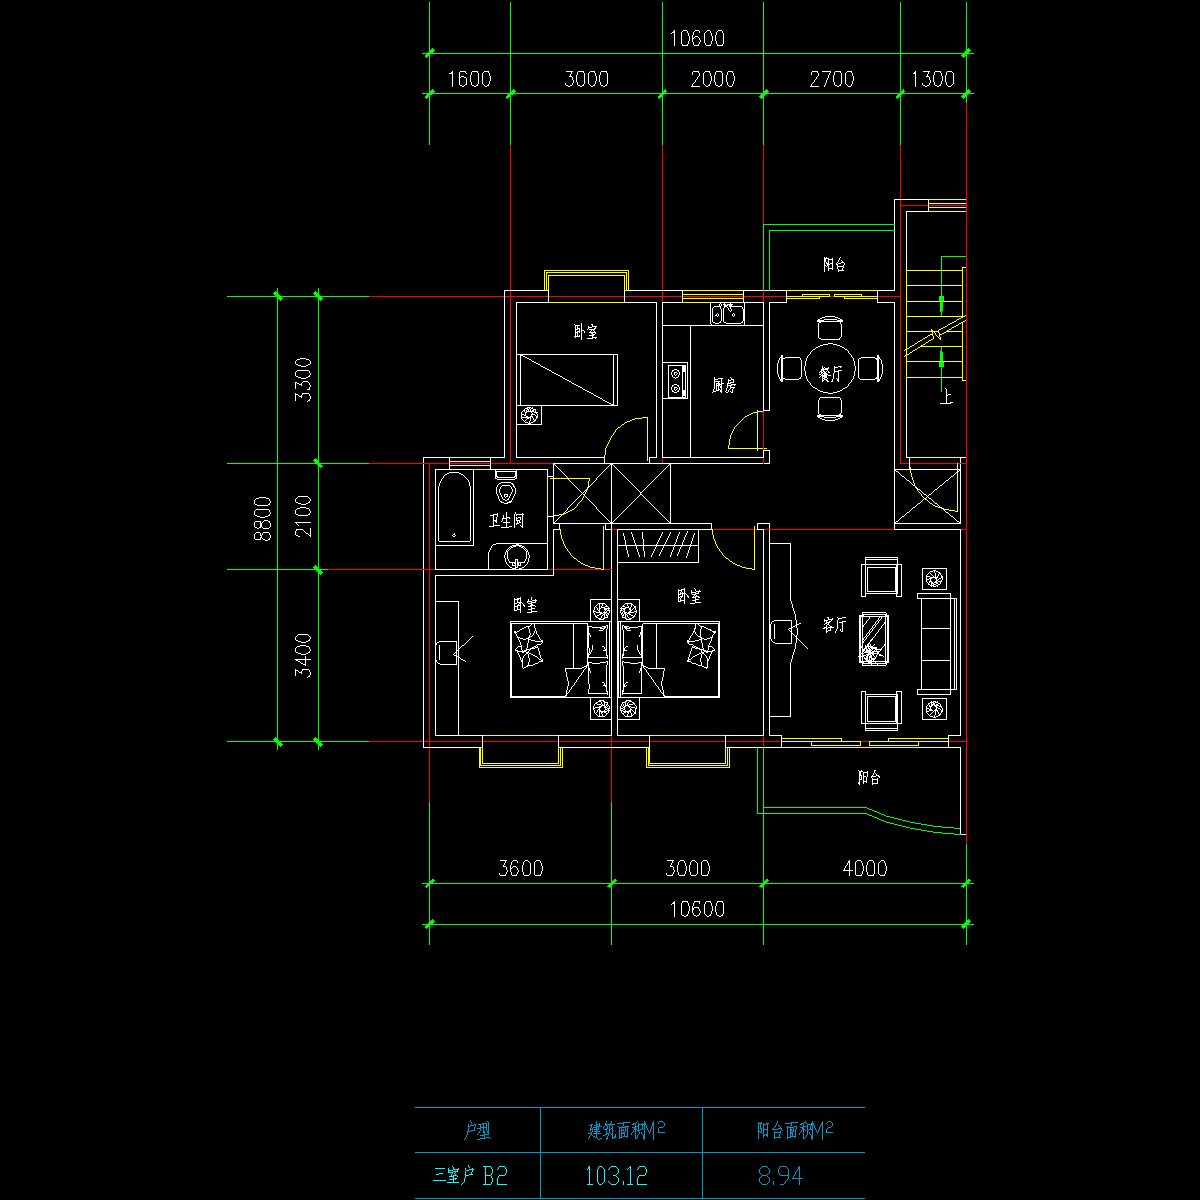 板式高层三室一厅单户户型CAD图纸(103)